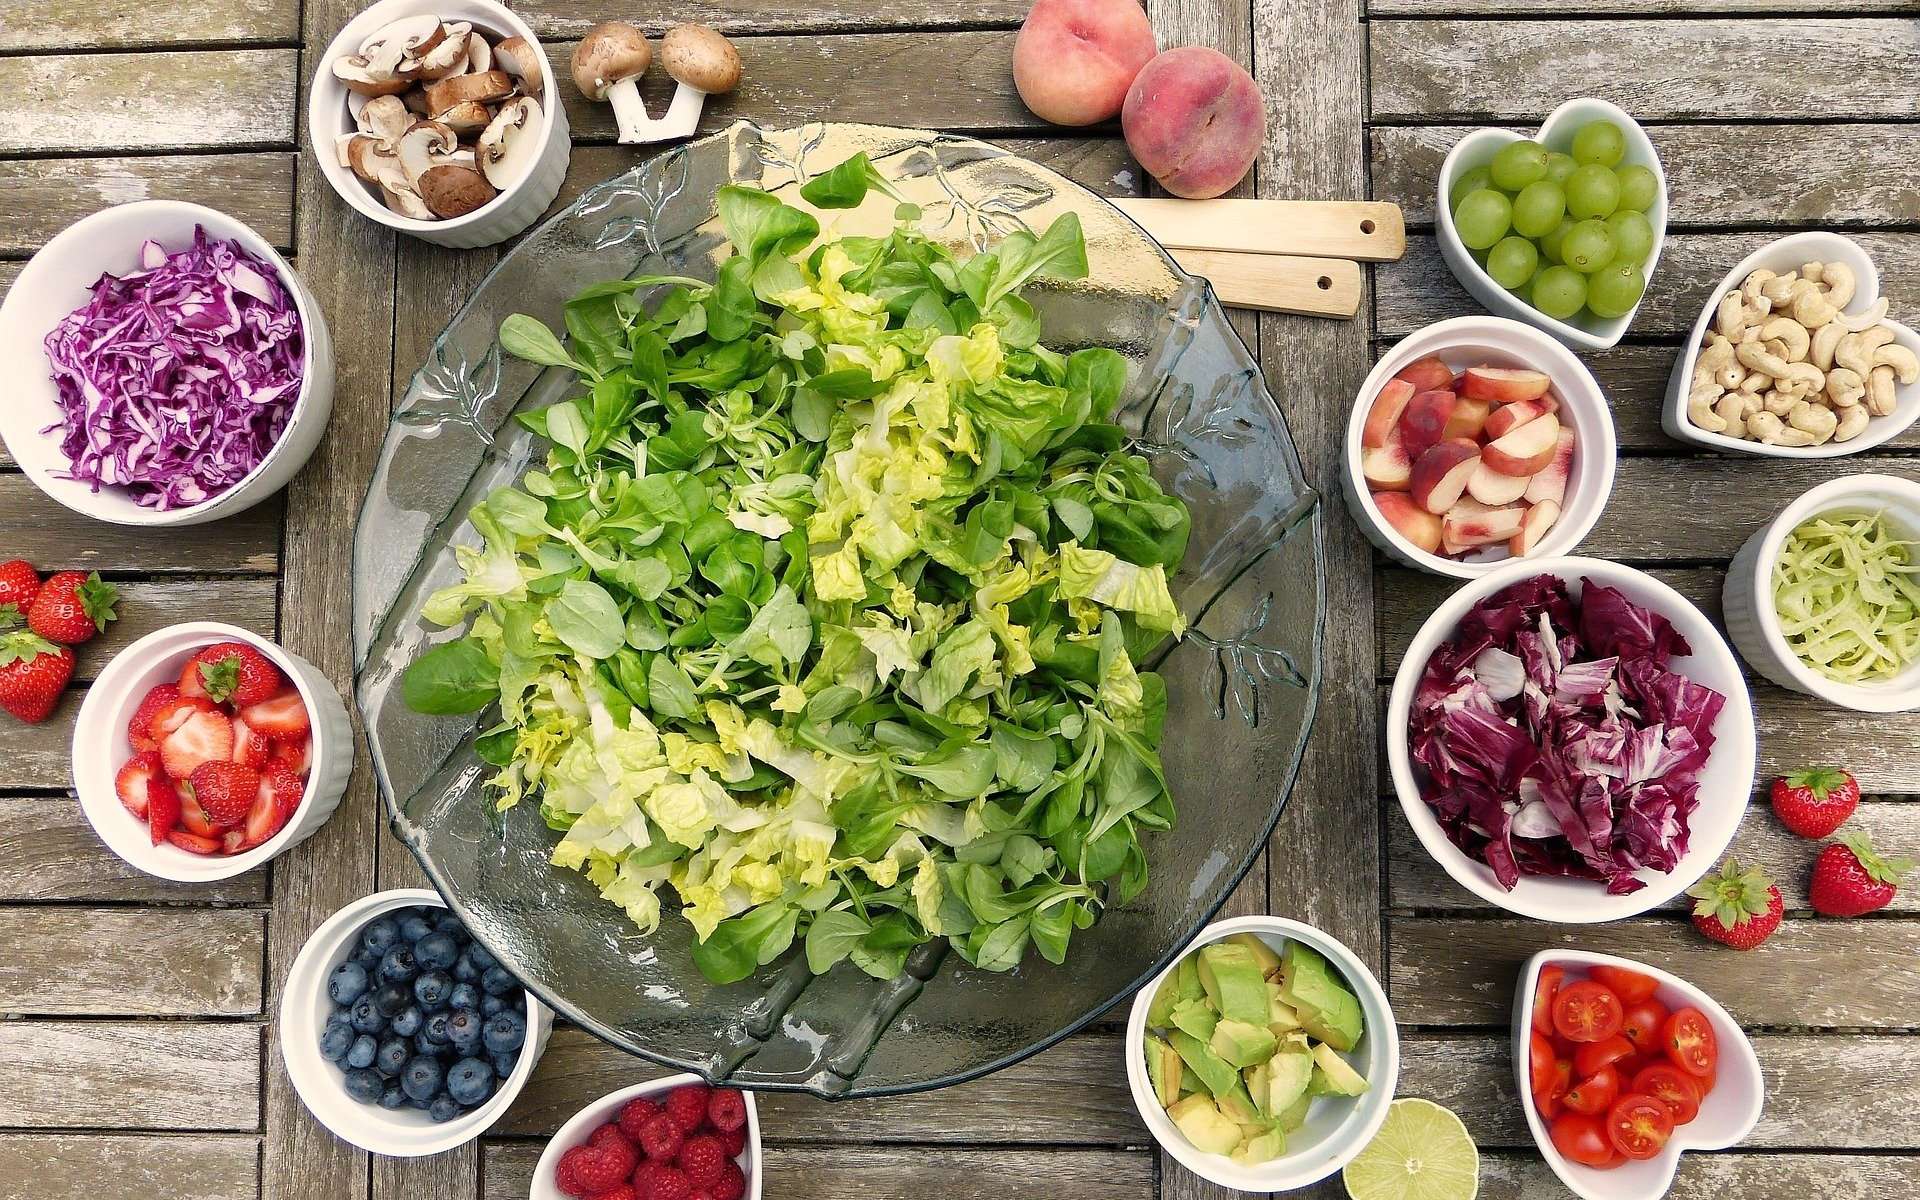 Salade, fruits, baies, légumes : des atouts pour une bonne santé. © Sylviarita, Pixabay